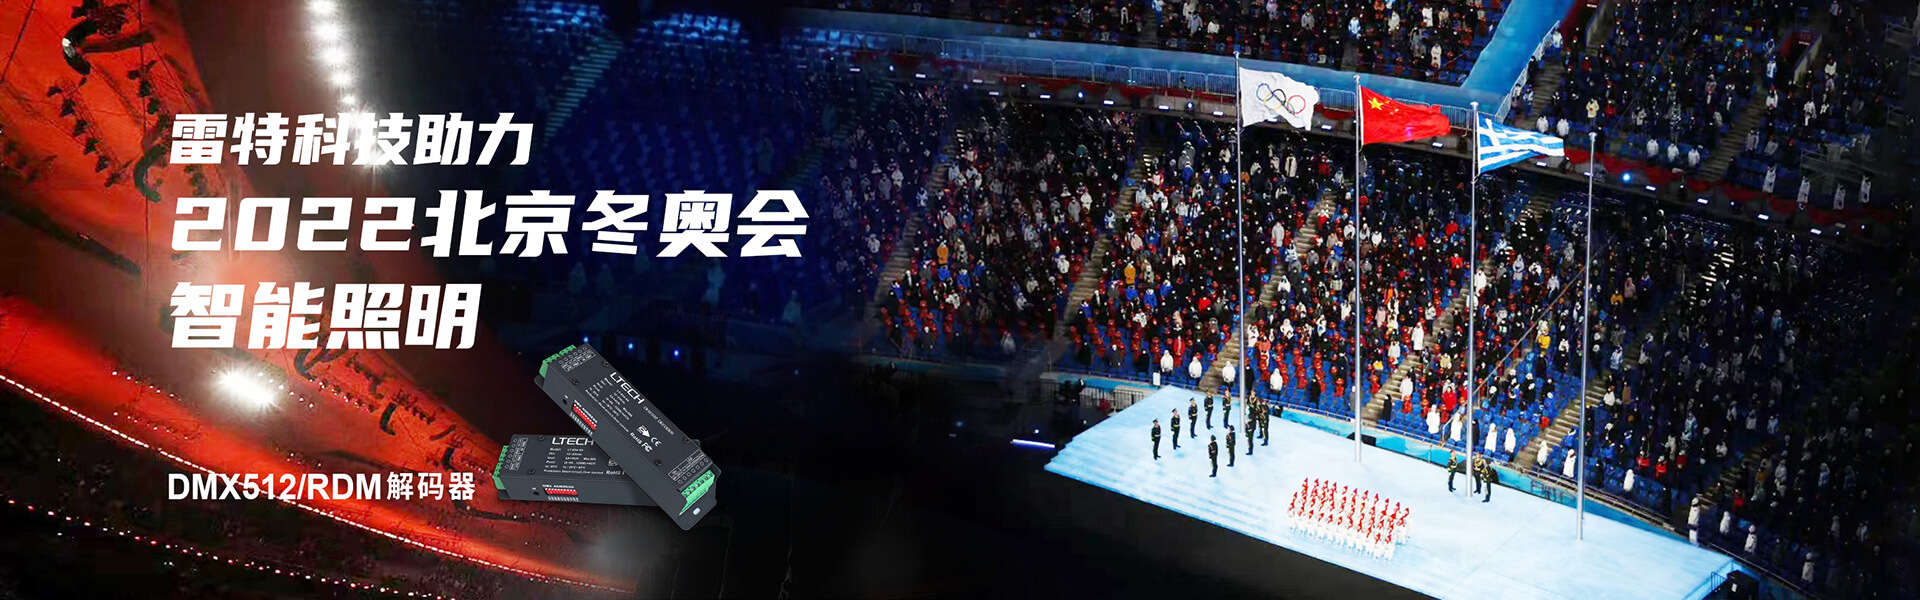 雷特科技助力2022北京冬奥会